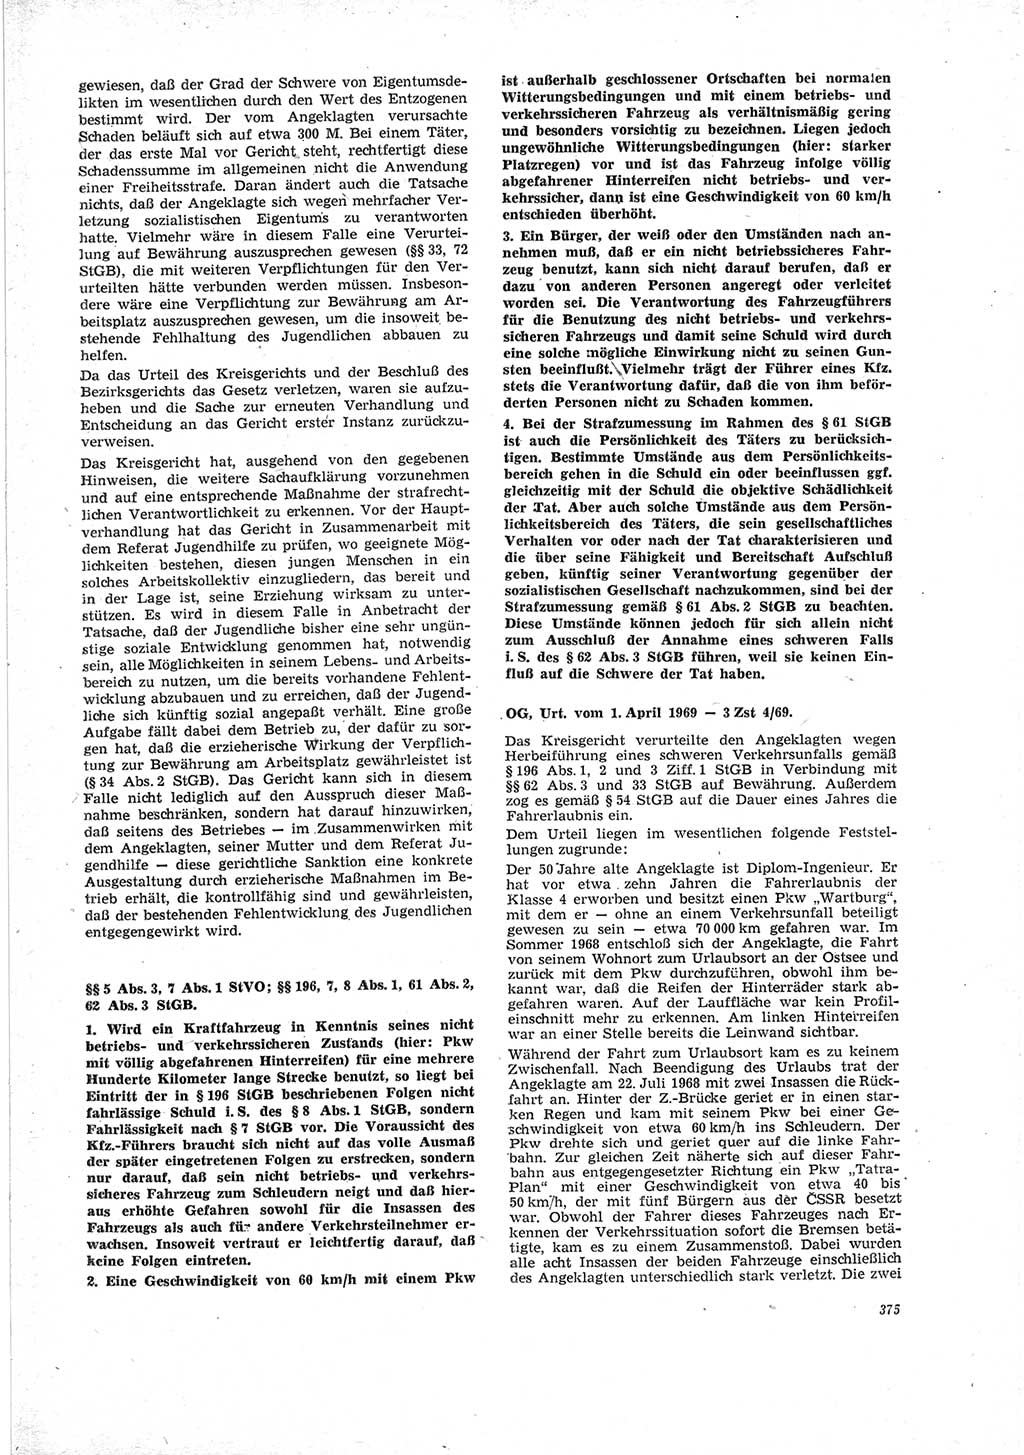 Neue Justiz (NJ), Zeitschrift für Recht und Rechtswissenschaft [Deutsche Demokratische Republik (DDR)], 23. Jahrgang 1969, Seite 375 (NJ DDR 1969, S. 375)